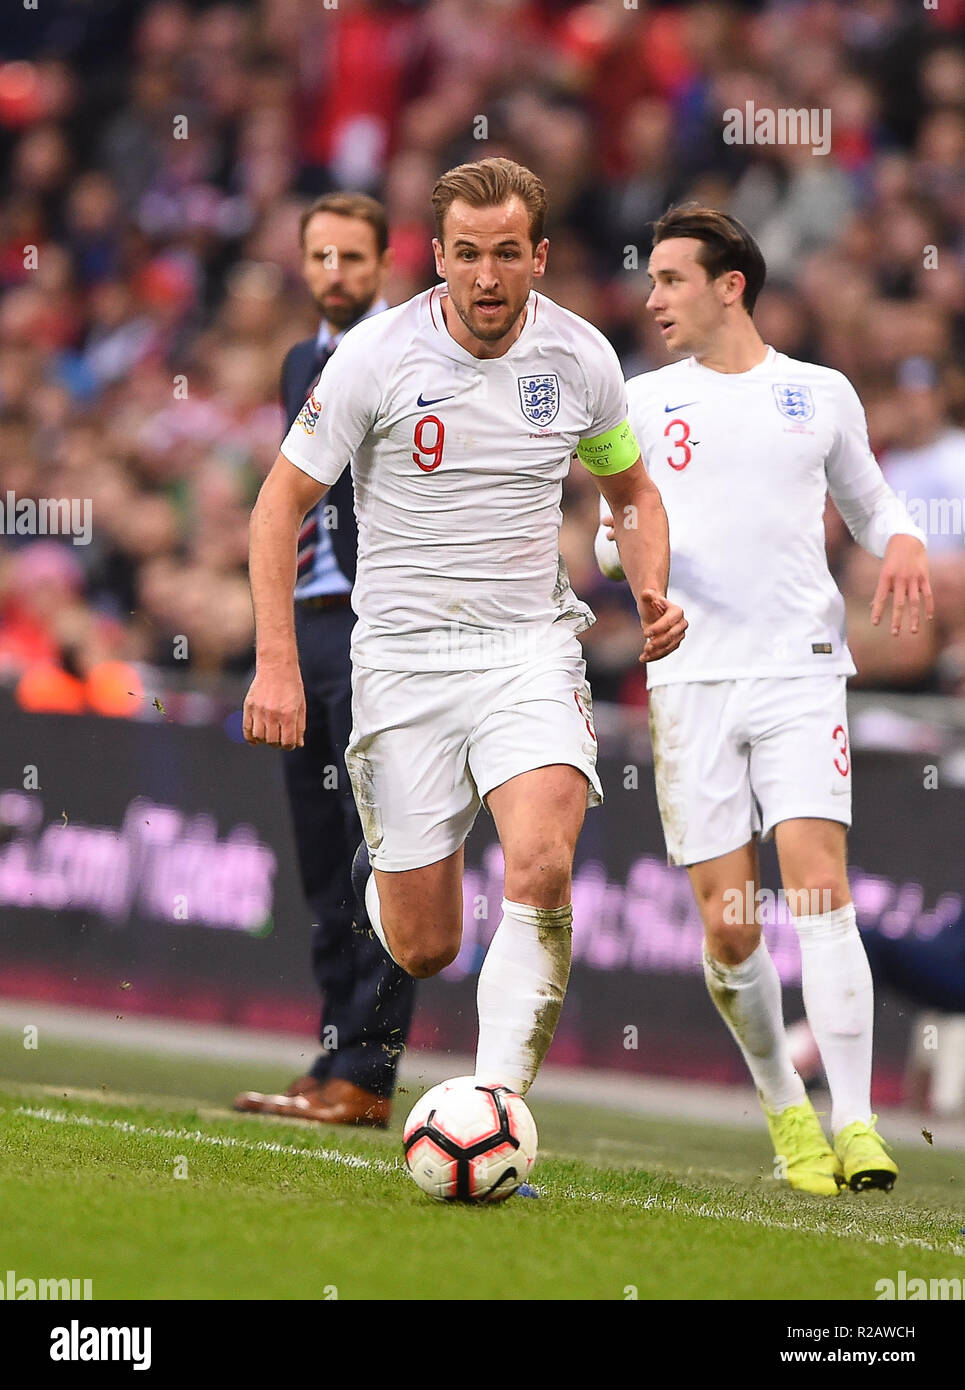 Londres, Reino Unido. 18 de noviembre de 2018. Inglaterra adelante Harry Kane (9) durante la final de la UEFA Unidas encuentro de Liga entre Inglaterra y Croacia en el estadio de Wembley, en Londres el domingo 18 de noviembre de 2018. (©MI News & Sport Ltd | Alamy Live News) Foto de stock